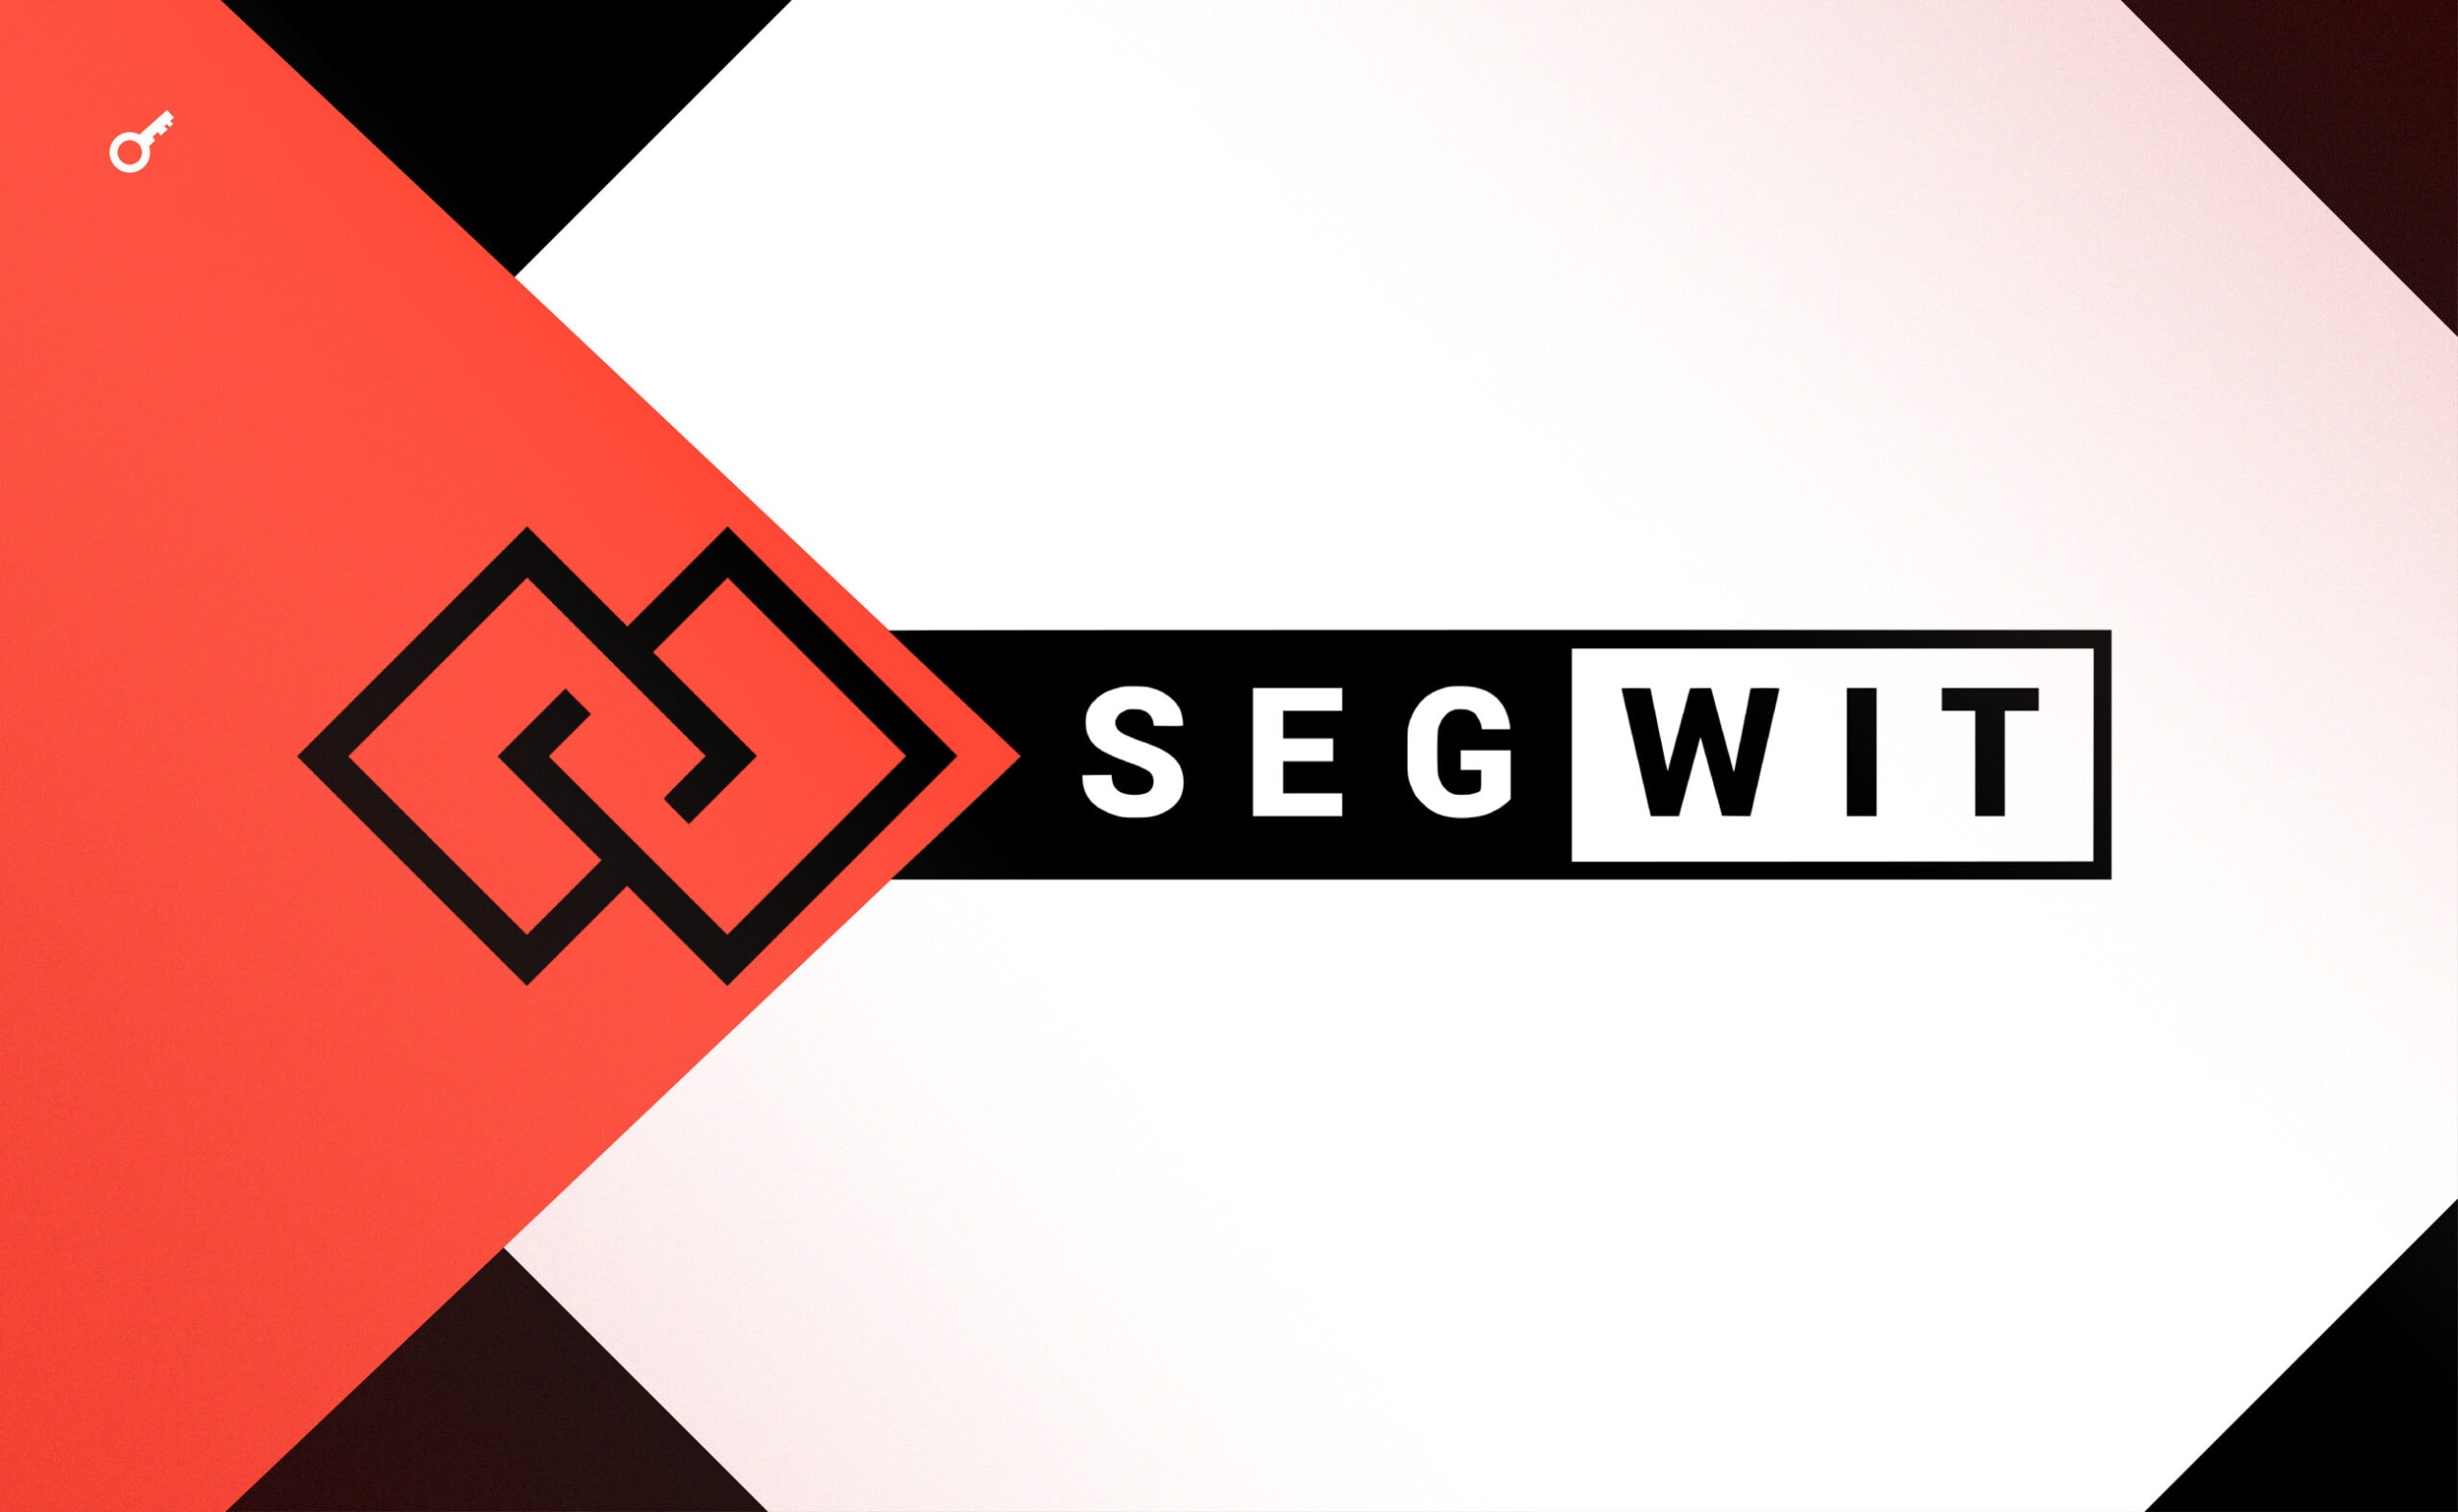 Technologia Segregated Witness (SegWit). Pełny przegląd tego, jak to wszystko działa. Główny kolaż artykułu.